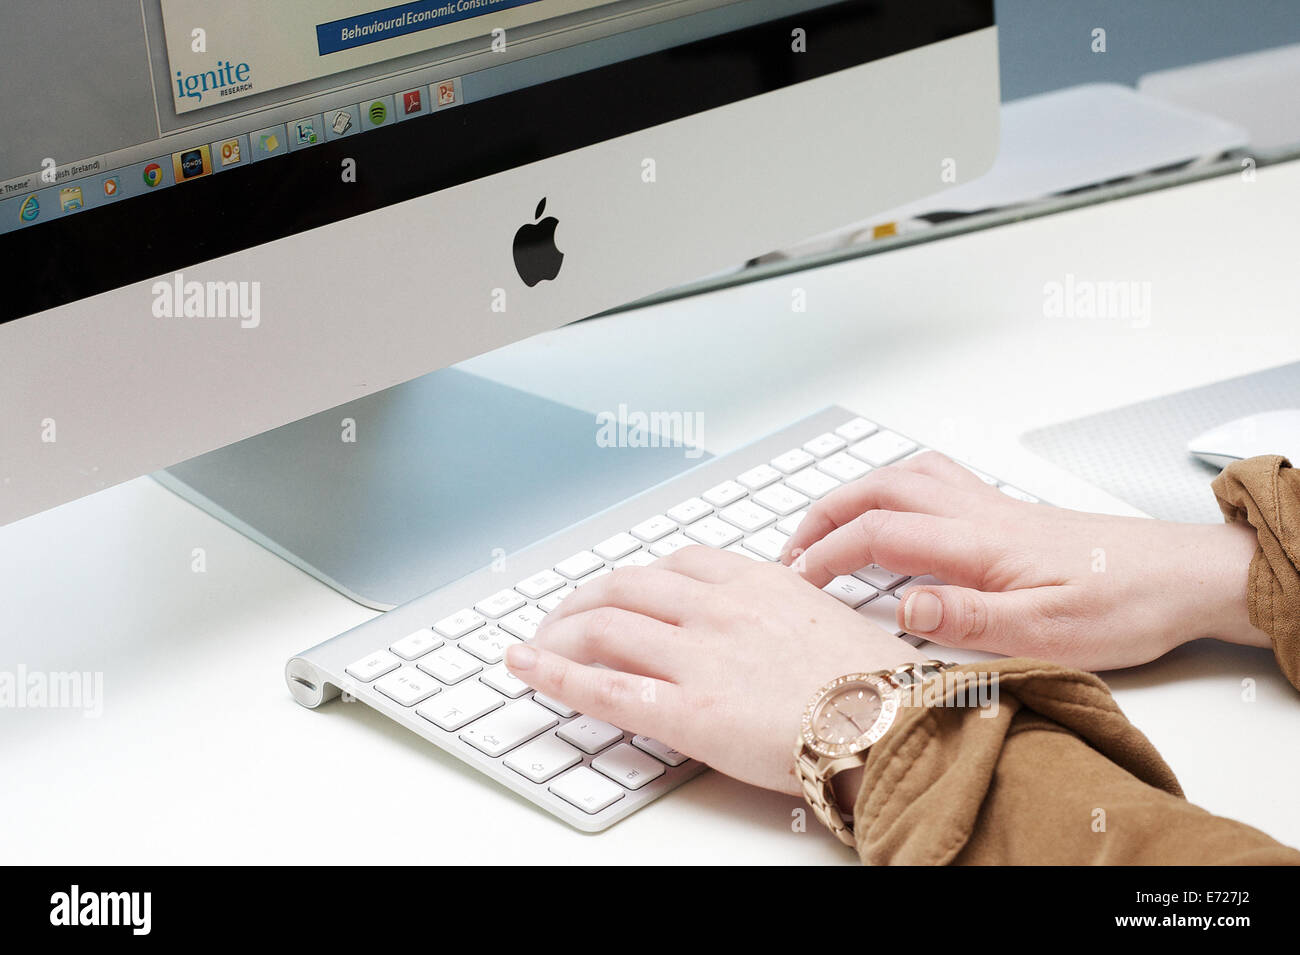 Mani femminili digitando sulla tastiera di un computer Apple IMAC. Foto Stock